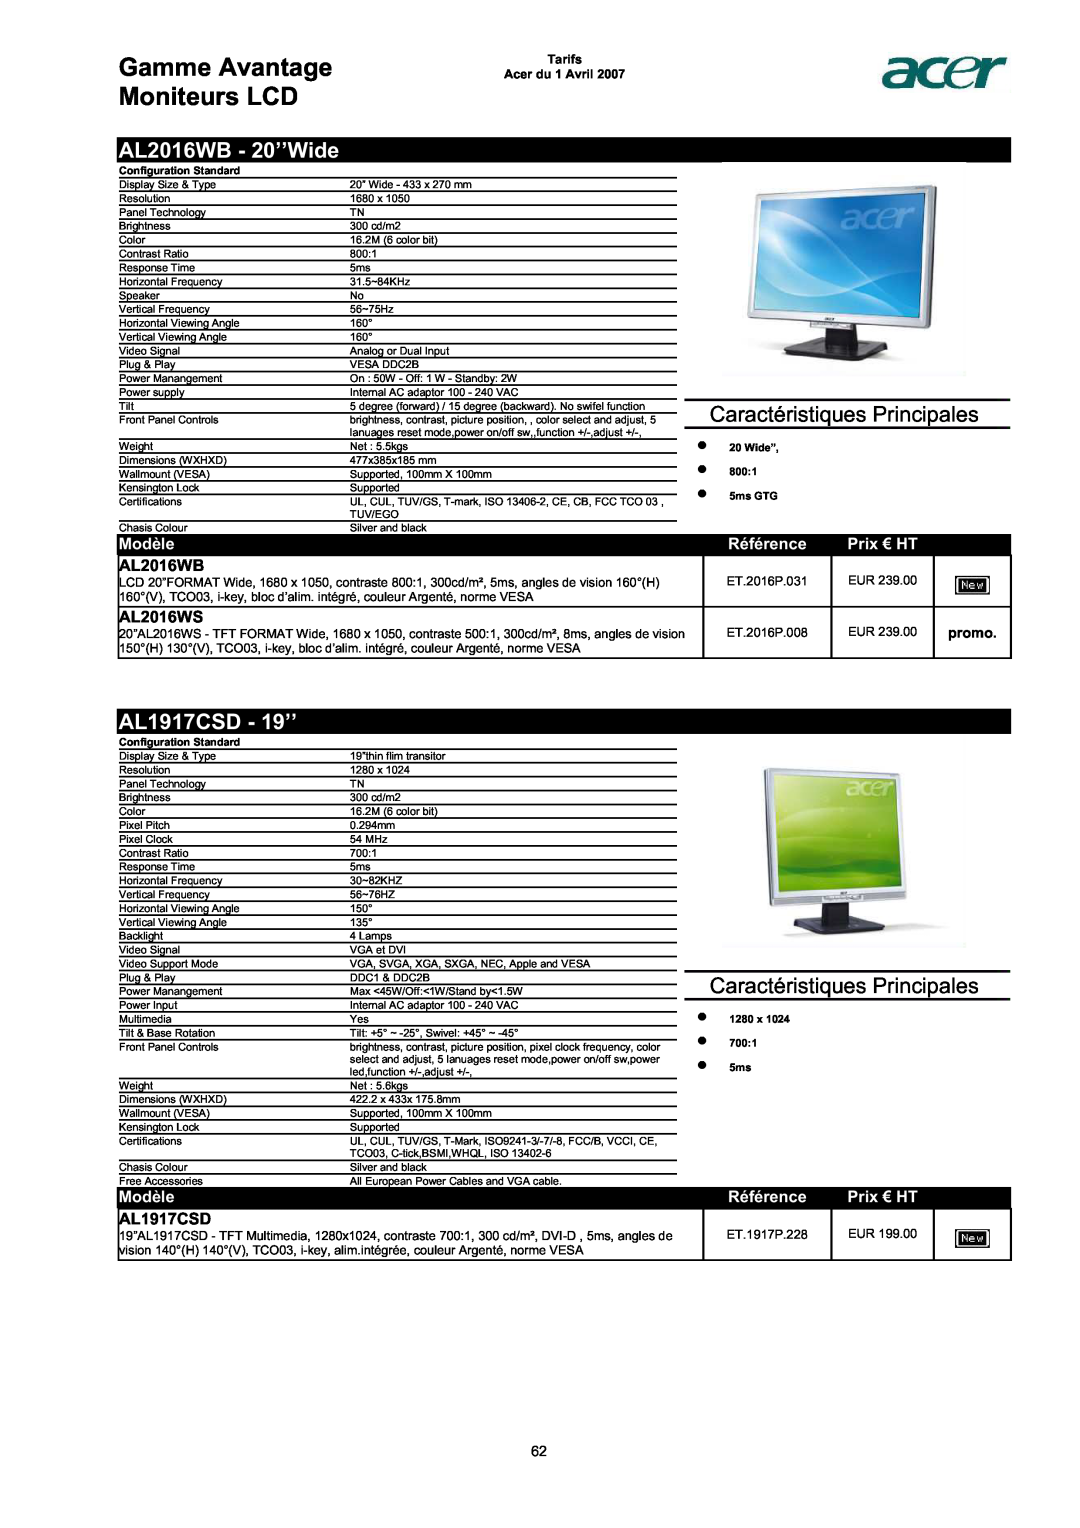 Acer AC713B-17 AL2016WB - 20’’Wide, AL1917CSD - 19’’, AL2016WS, promo, Gamme Avantage Moniteurs LCD, Modèle, Référence 